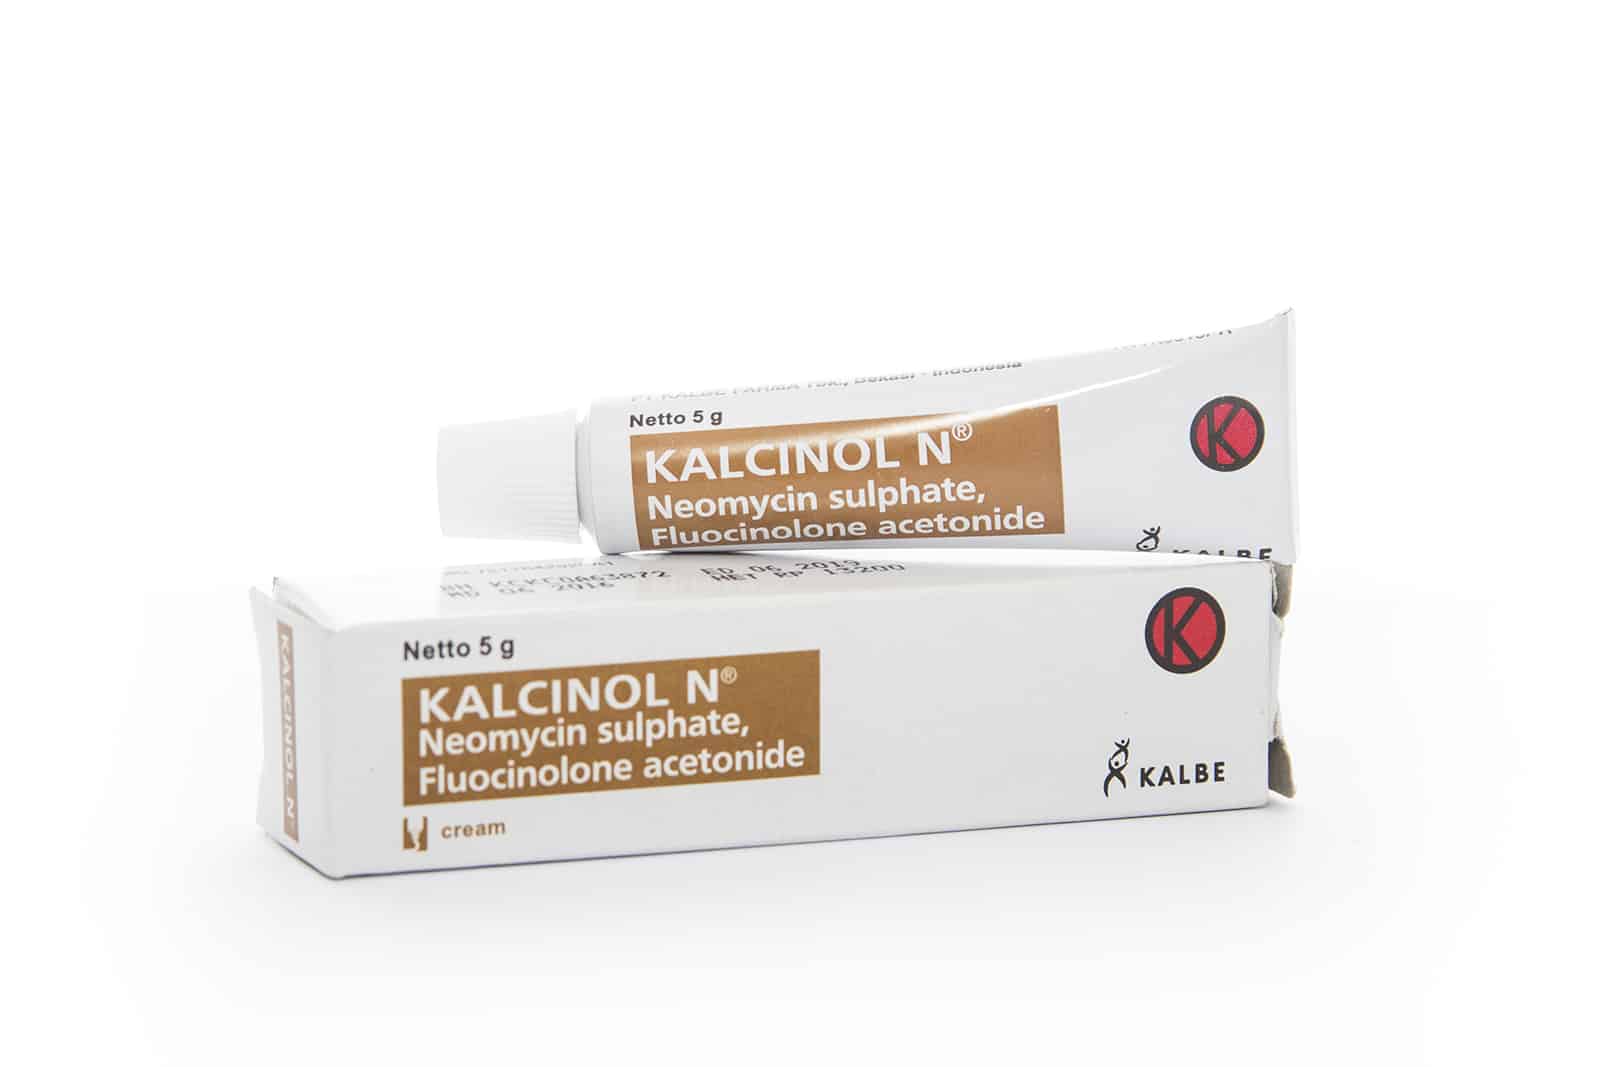 Kalcinol-N